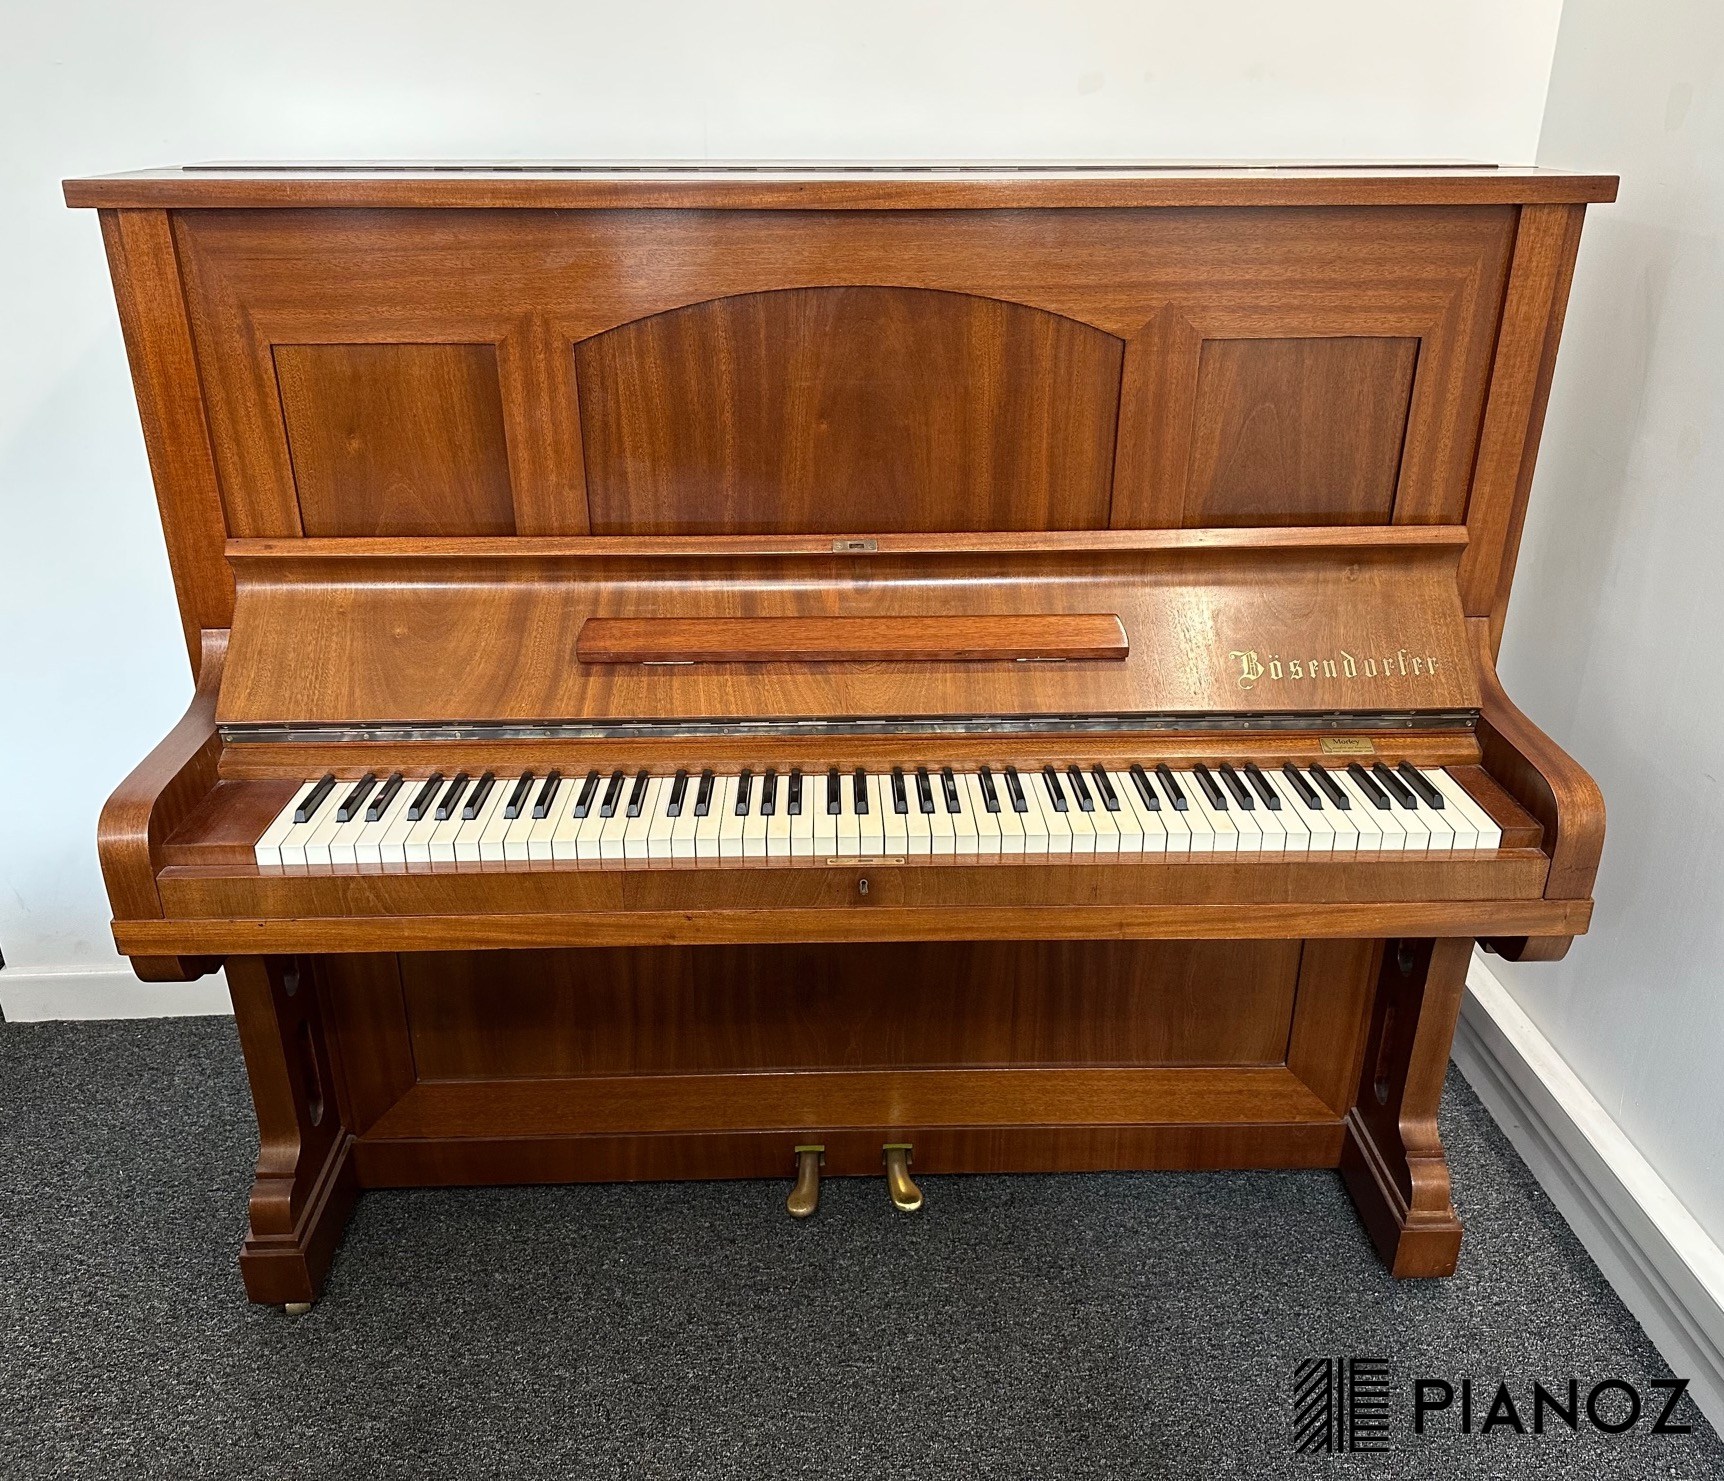 Bosendorfer 130 Upright Piano piano for sale in UK